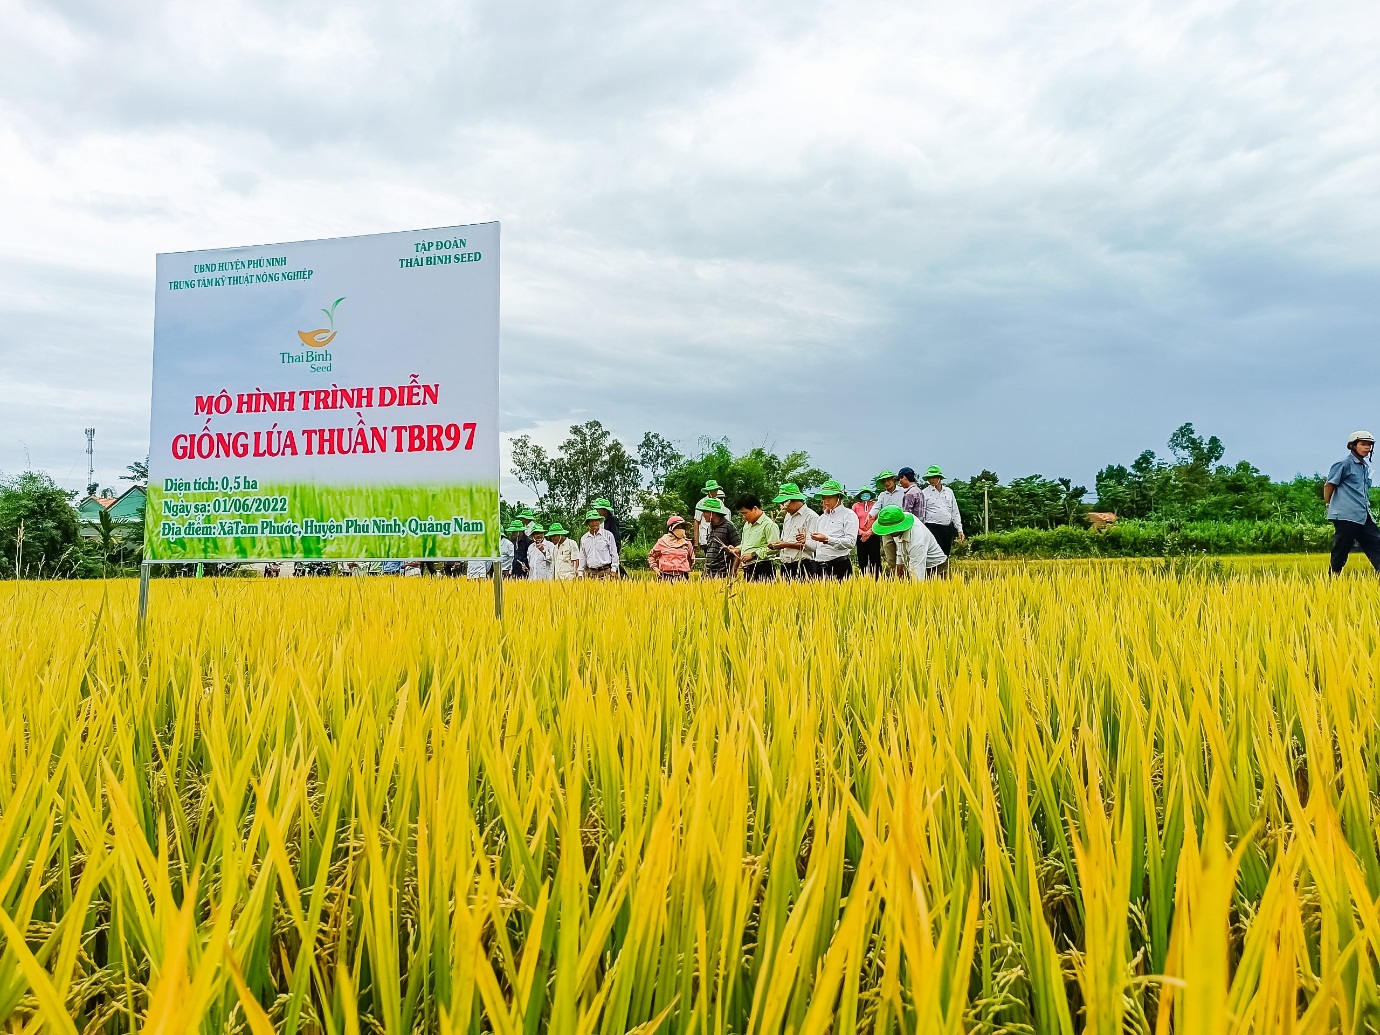 Giống lúa TBR97 của ThaiBinh Seed hứa hẹn là quả &quot;bom tấn&quot; trong sản xuất lúa trên cả nước - Ảnh 4.